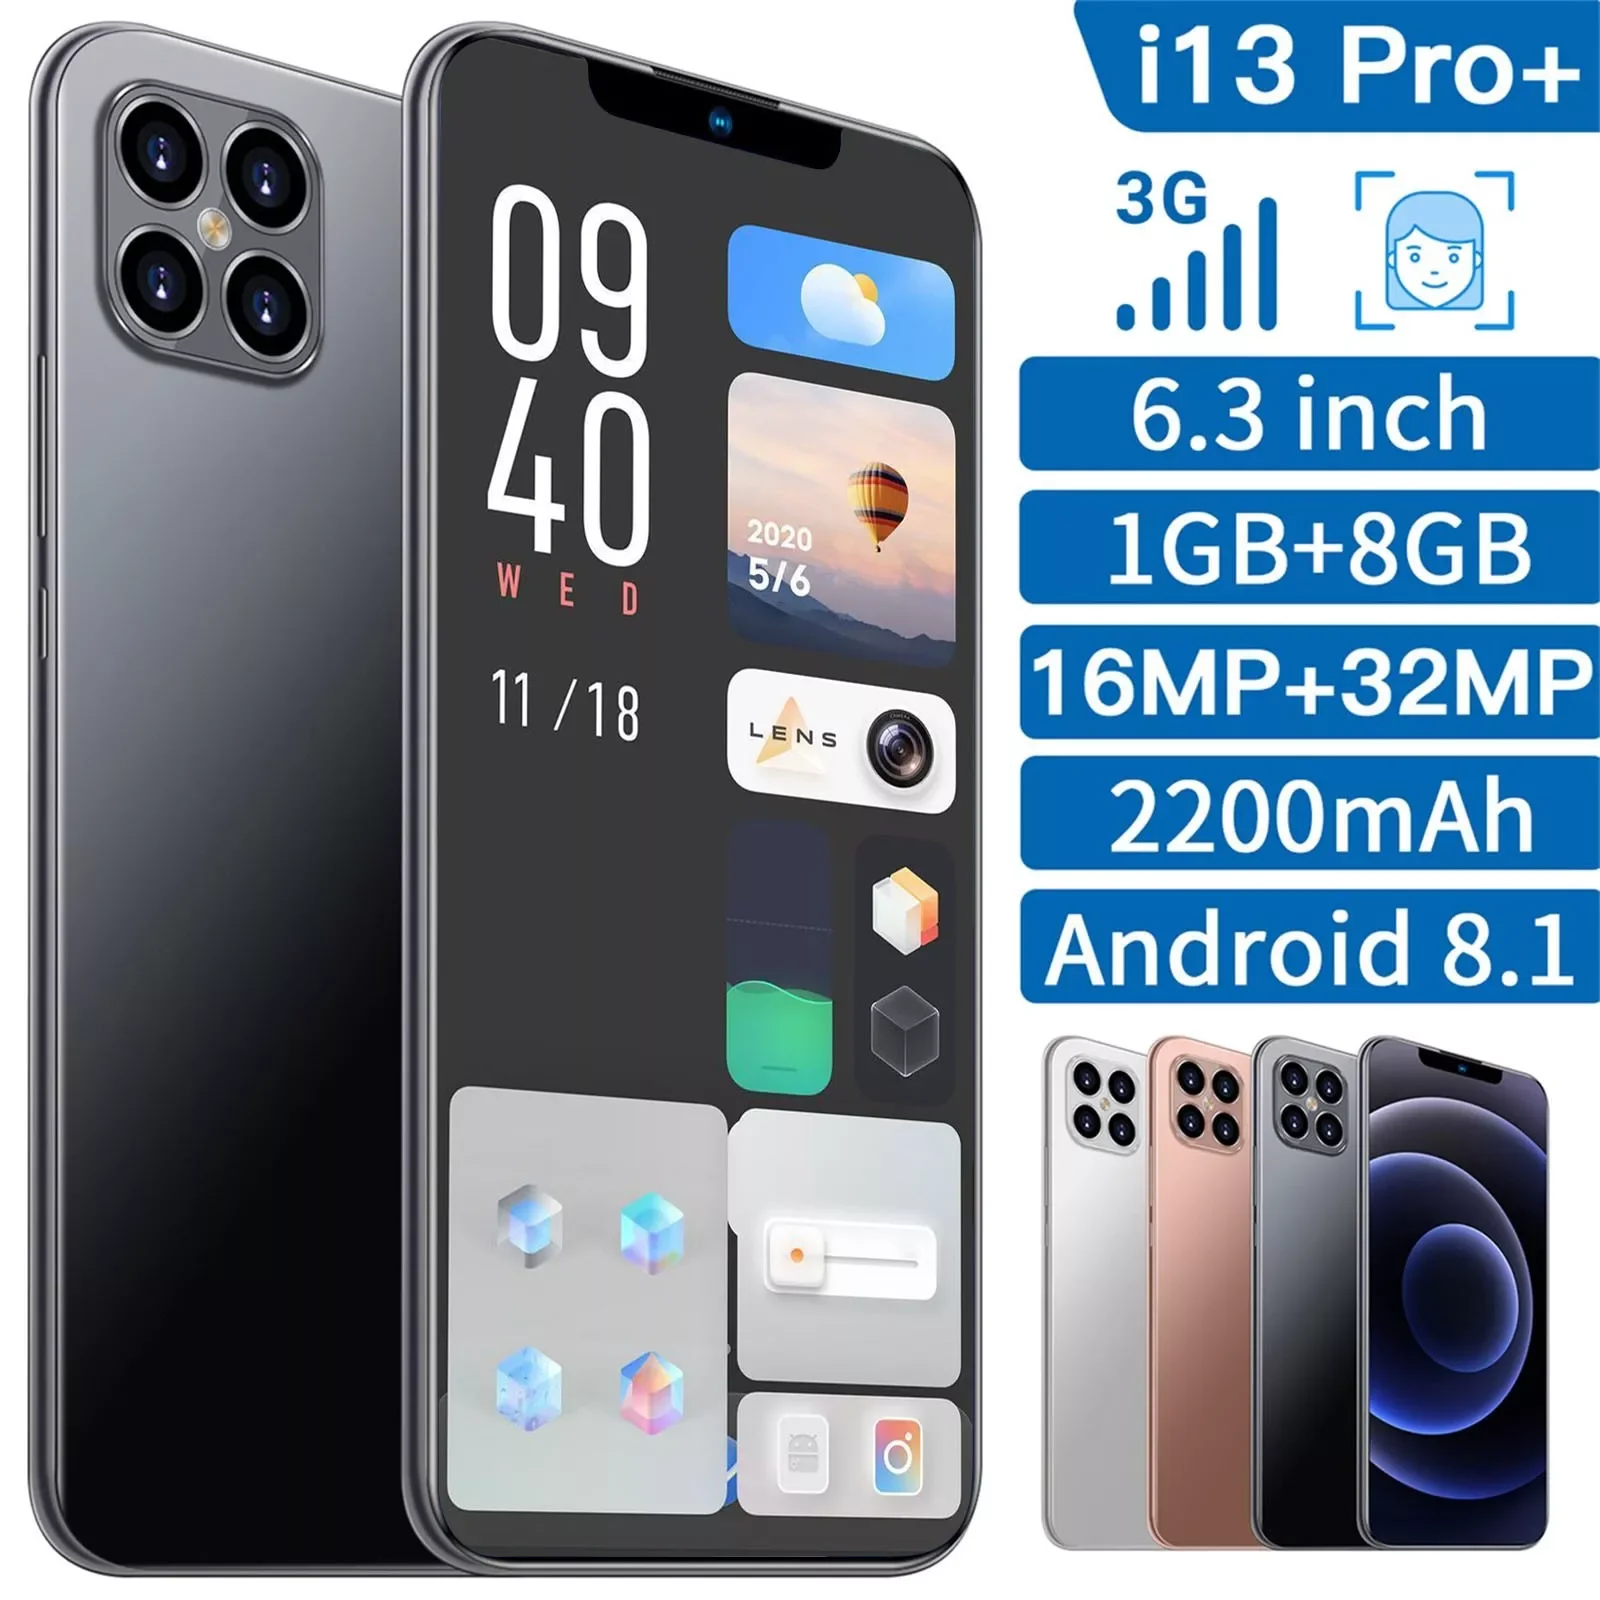 Enlarge CARPRIE i13 Pro+ Smartphones Android 8.1 1GB+8GB Cell Phones Quad-Core 6.3 Inch Mobile Phone 2600mAh Smartphones смартфоны